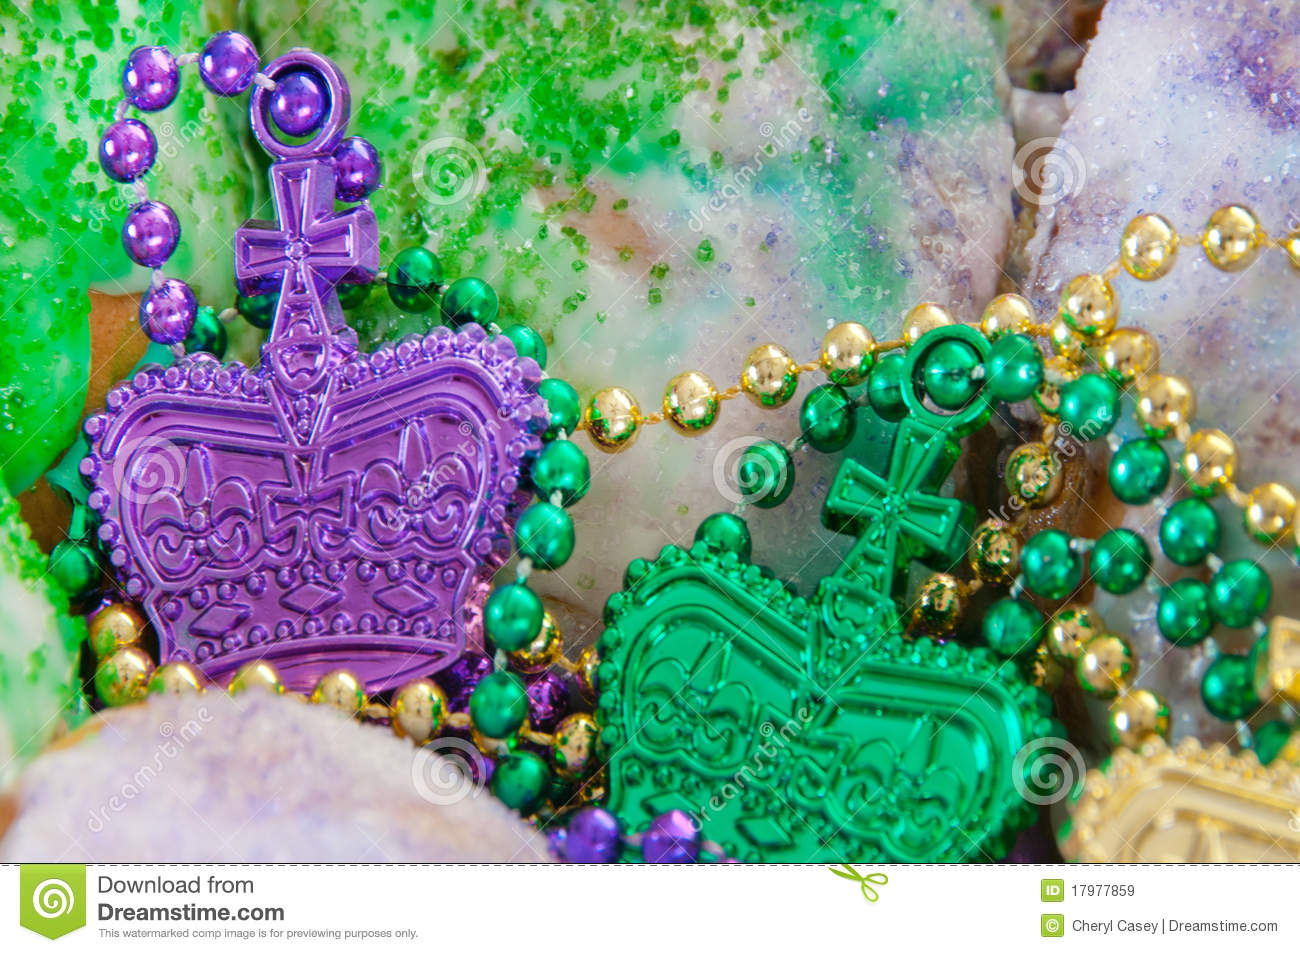 Mardi Gras King Cake Royalty Free Stock Images   Image  17977859